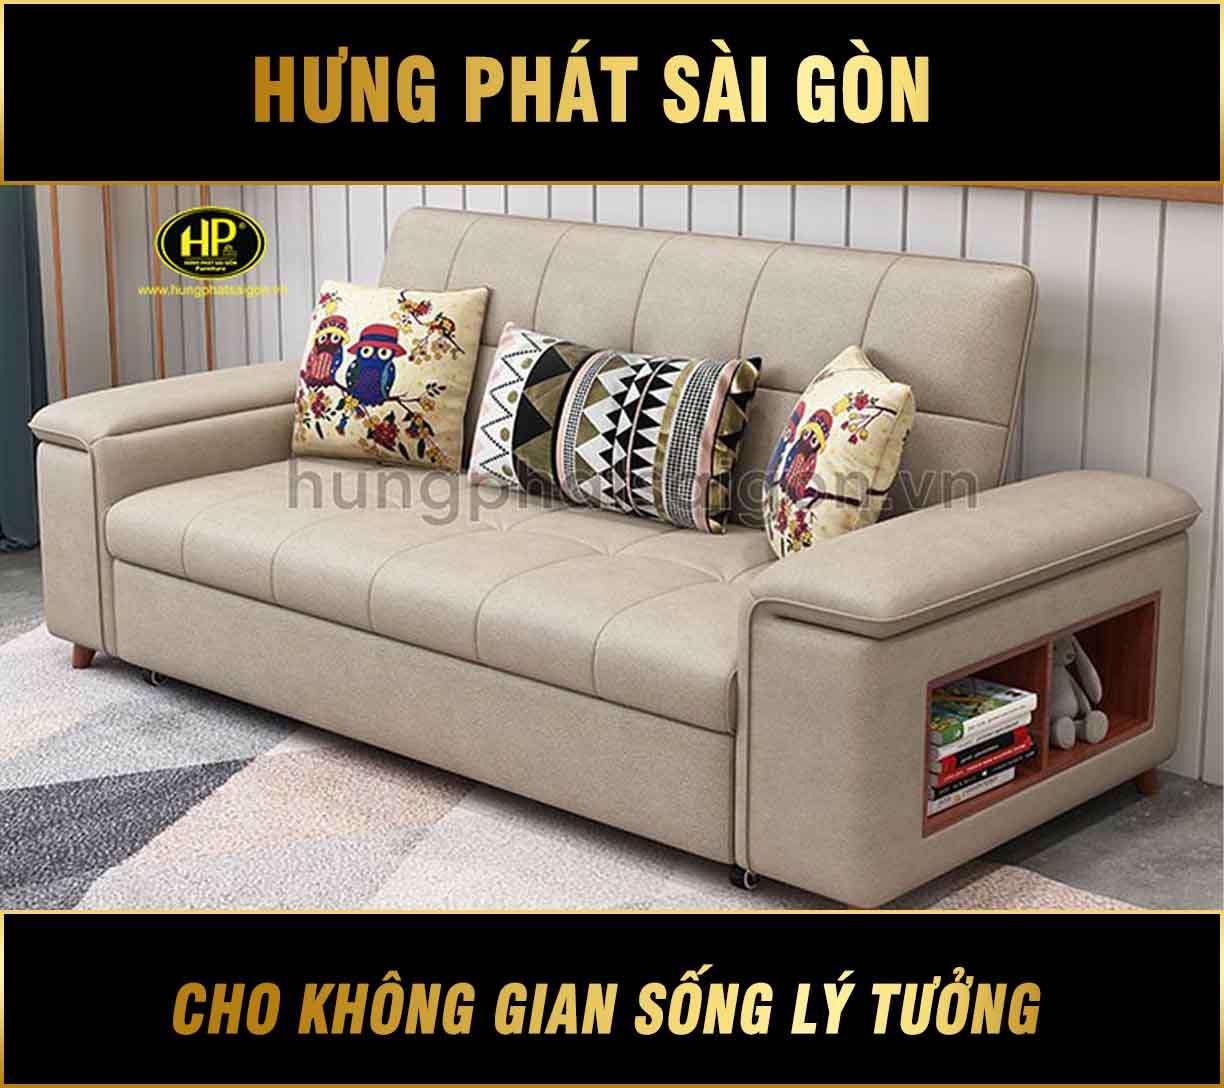 Sofa đa năng tại Hưng Phát Sài Gòn đảm bảo bền đẹp, giá rẻ